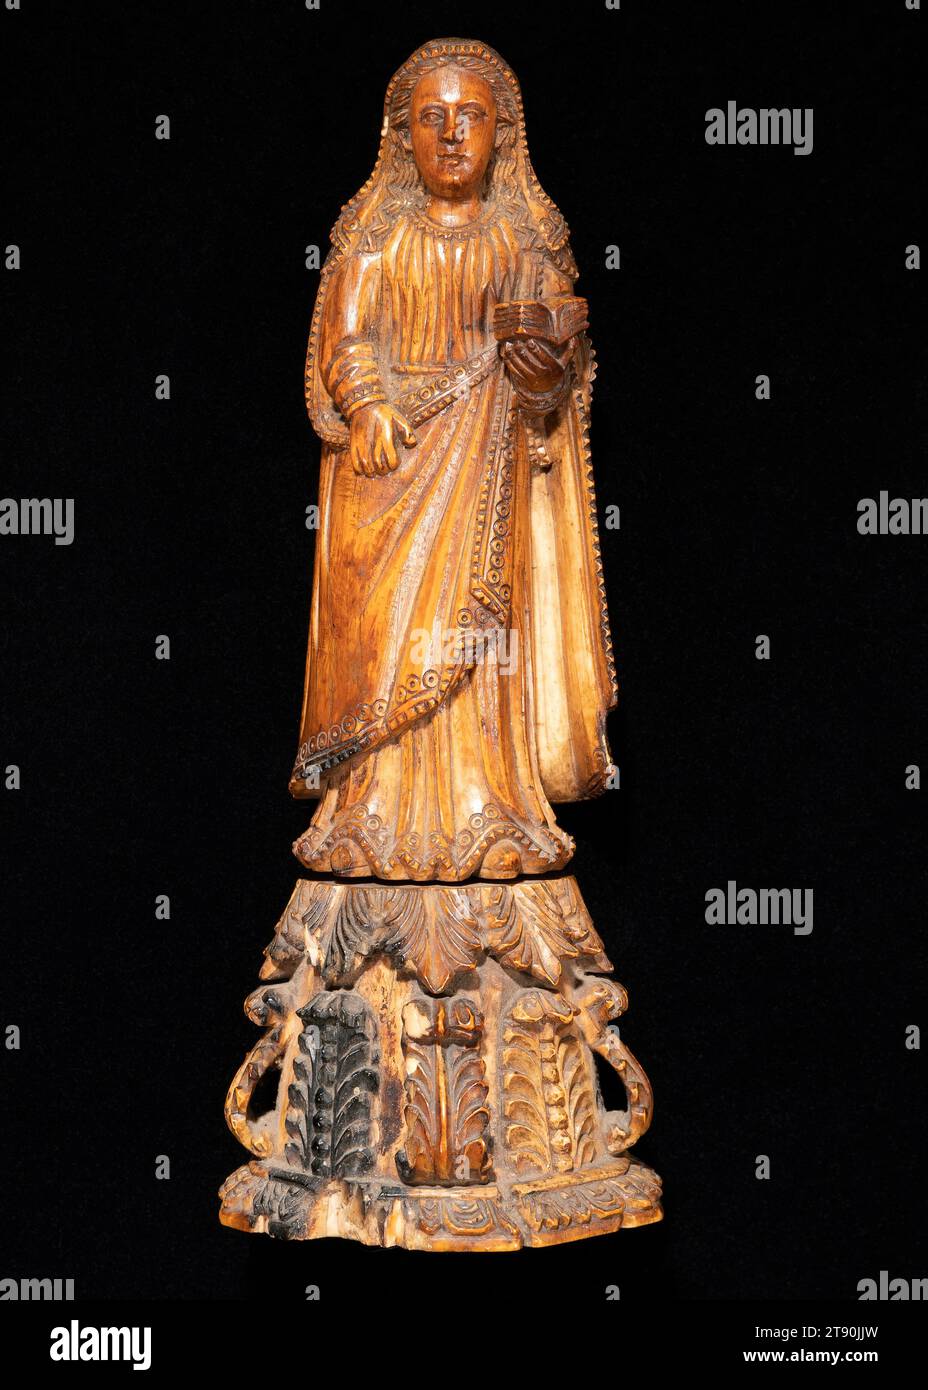 Marienfigur Magdalena, 17.-19. Jahrhundert, 1/16 x 1/16 x 1/2 cm (20,48 x 7,78 x 6,35 cm), Elfenbein, Indien, 17. Bis 19. Jahrhundert, die Provinz Goa in Westindien stand von 1512 bis 1961 unter portugiesischer Kontrolle und bildete einen Nexus in Handelsrouten, die die Erde umrundeten. Goan Handwerker waren bekannt für ihre geschmeidige Modellierung von Elfenbein (wahrscheinlich aus Mosambik exportiert) in christliche Ikonen, die den Appetit auf Luxusprodukte in Europa nähren, sowie für evangelikale Missionen in Asien und Amerika. Stockfoto